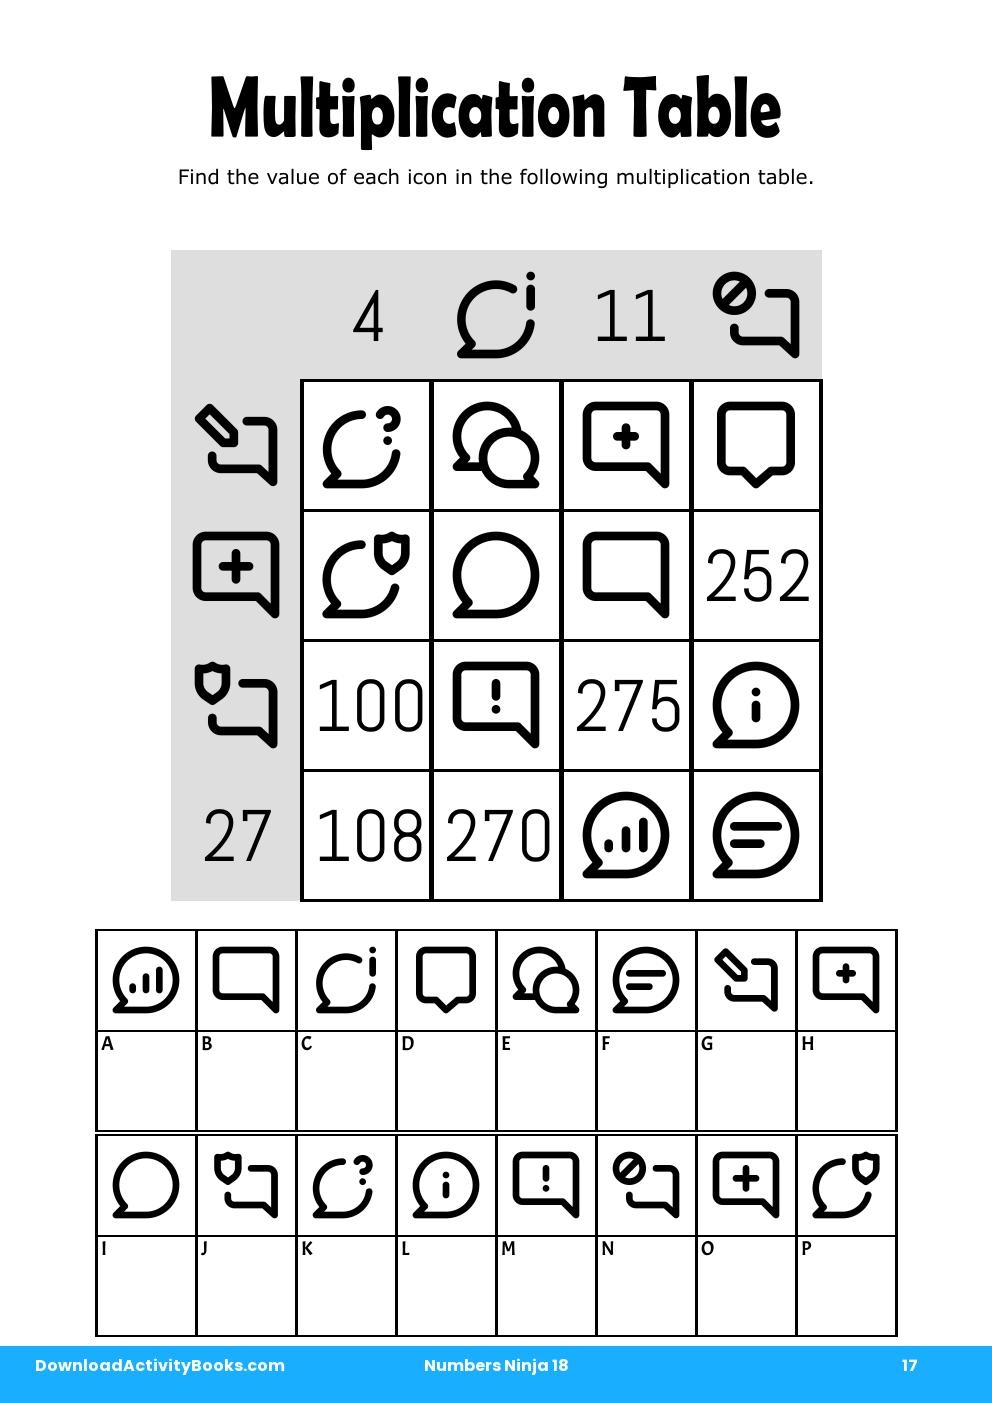 Multiplication Table in Numbers Ninja 18